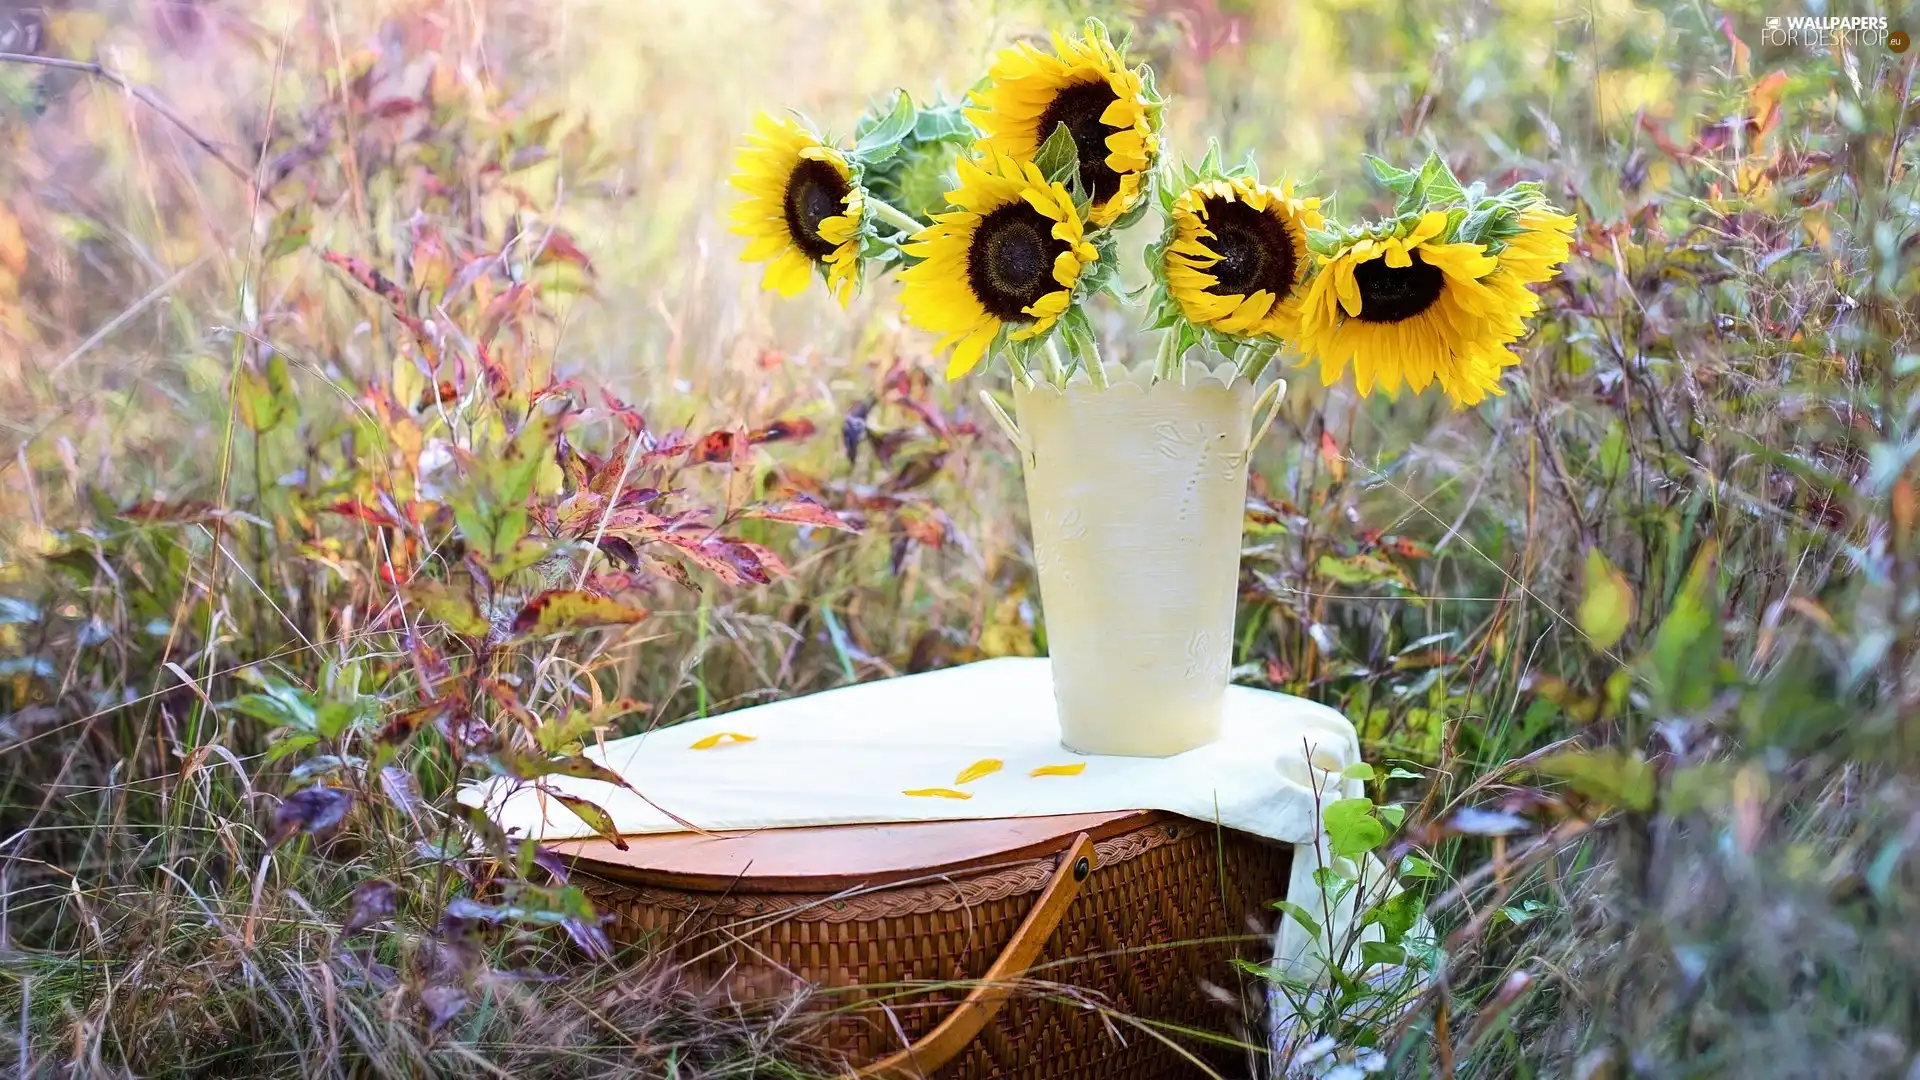 Flowers, Vase, basket, Nice sunflowers